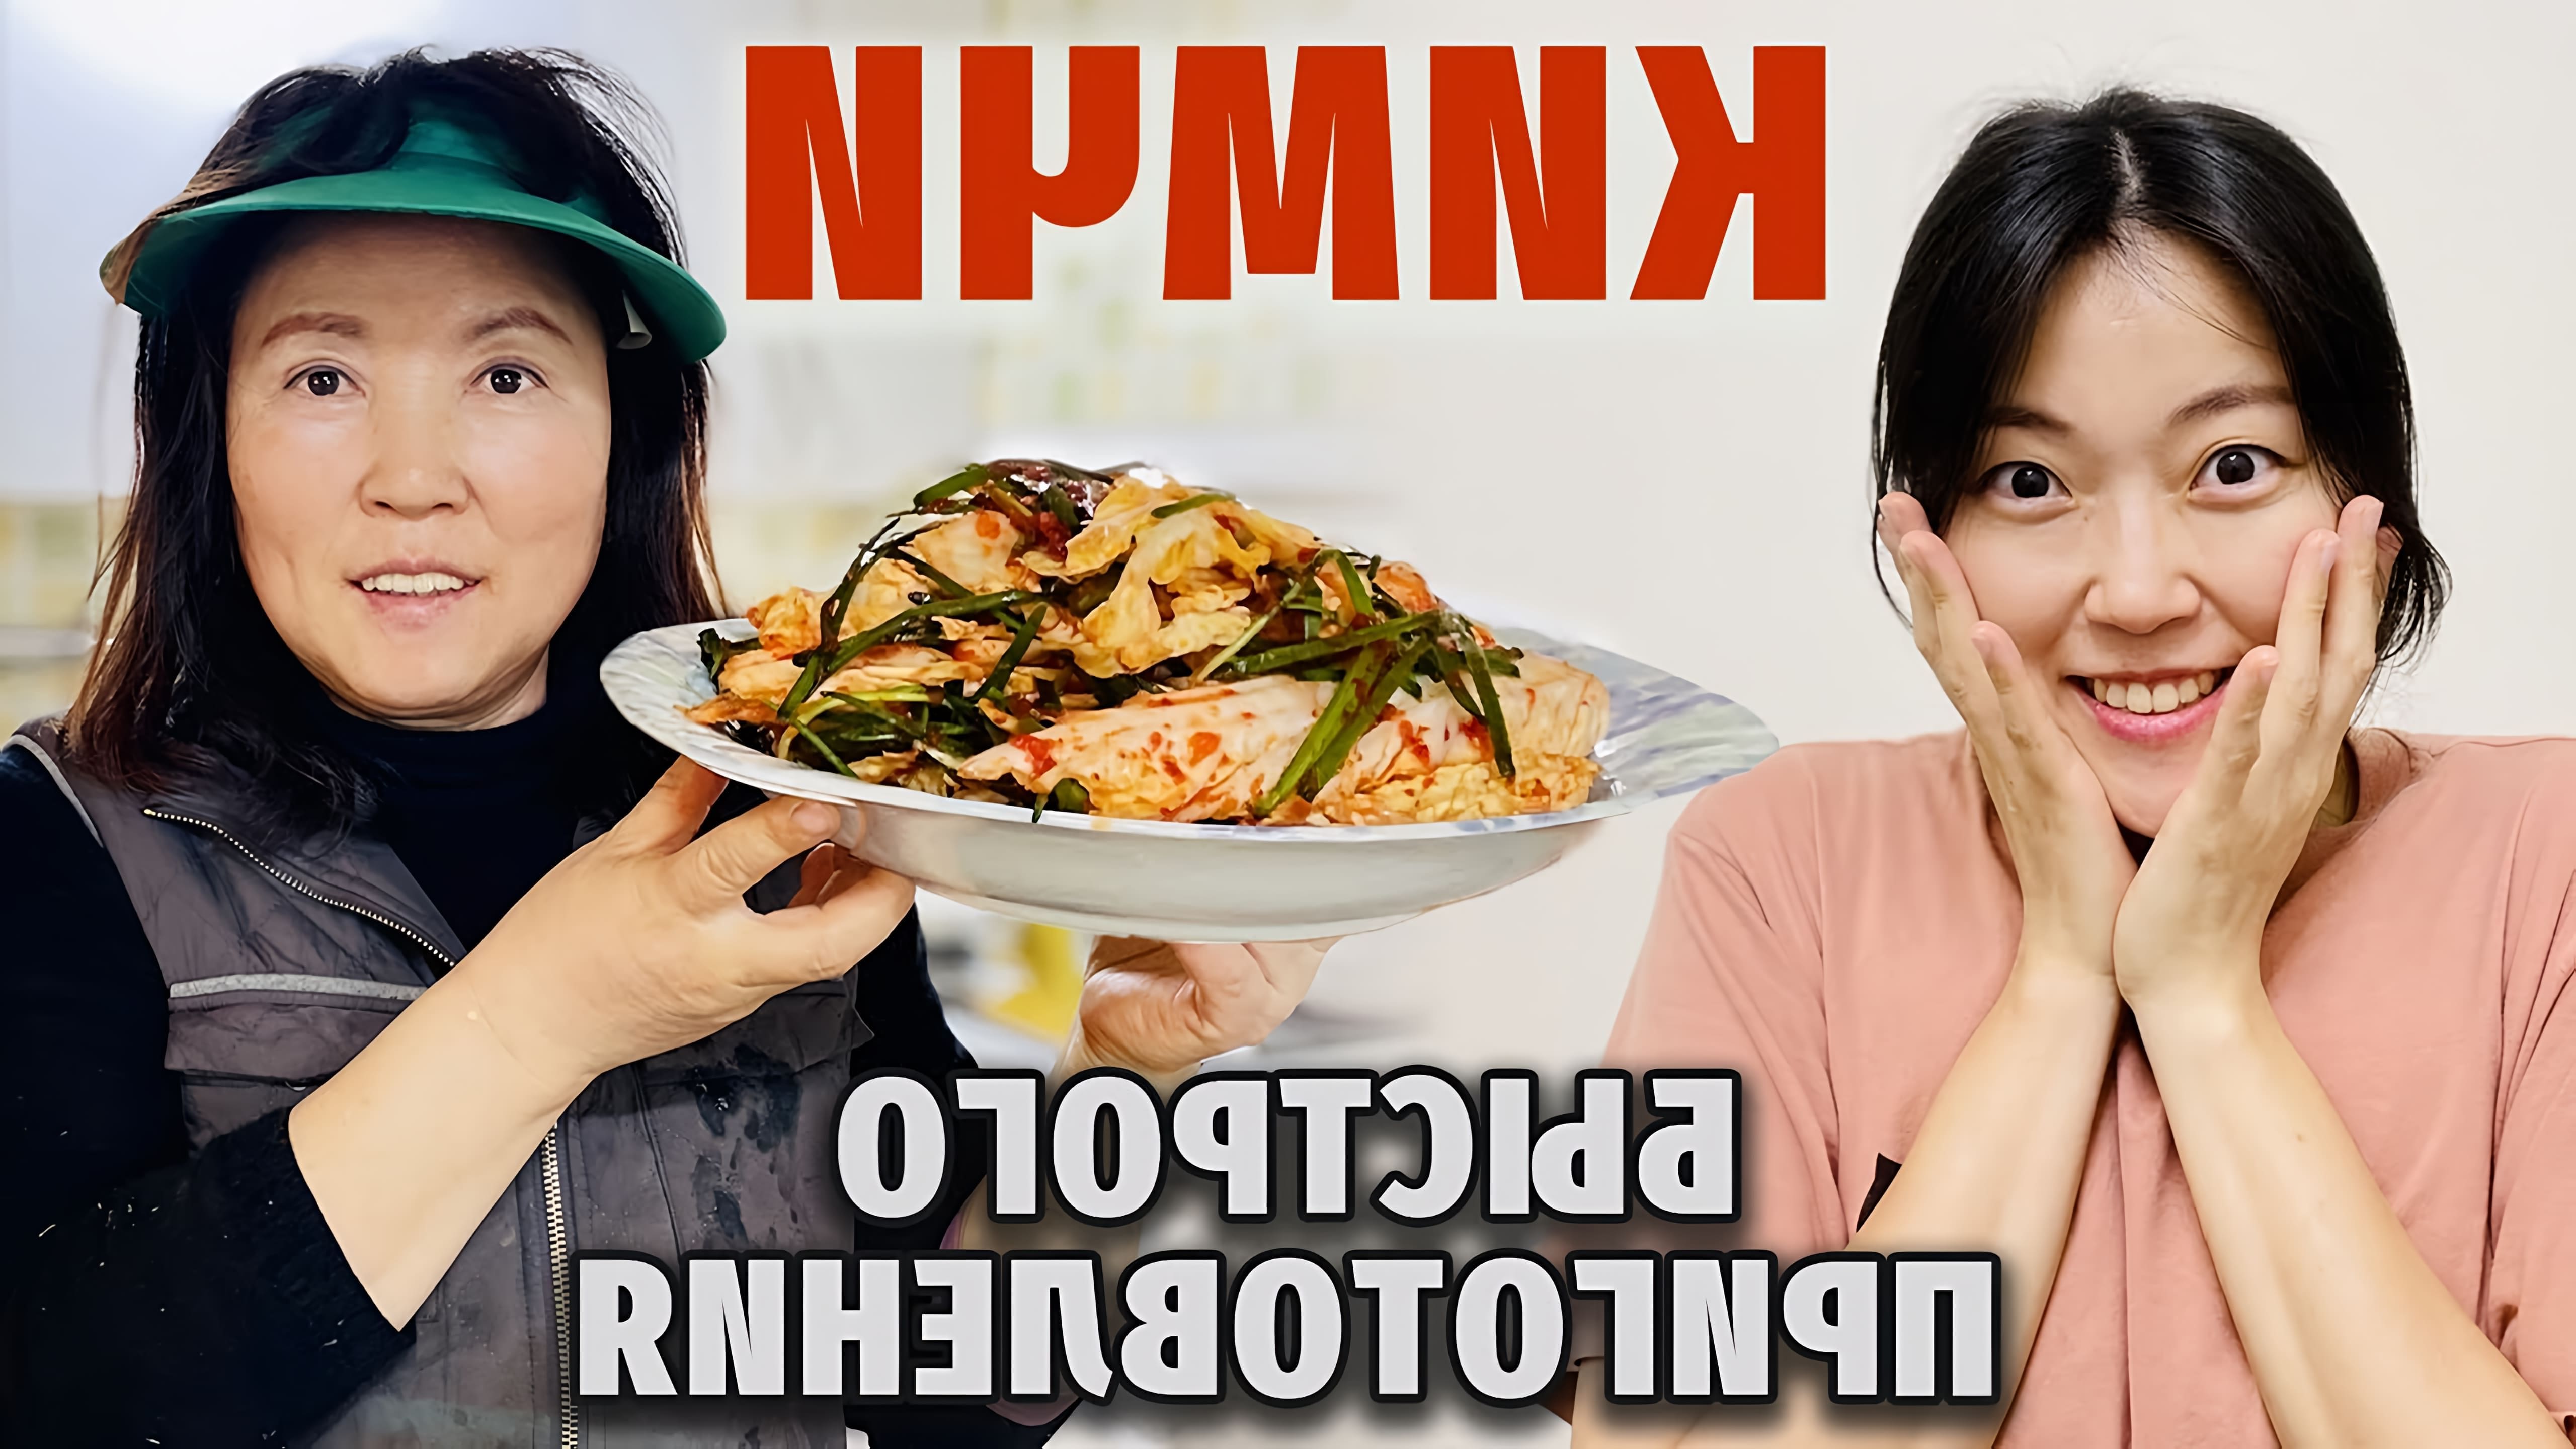 В данном видео демонстрируется простой и быстрый рецепт приготовления кимчи, традиционного корейского блюда